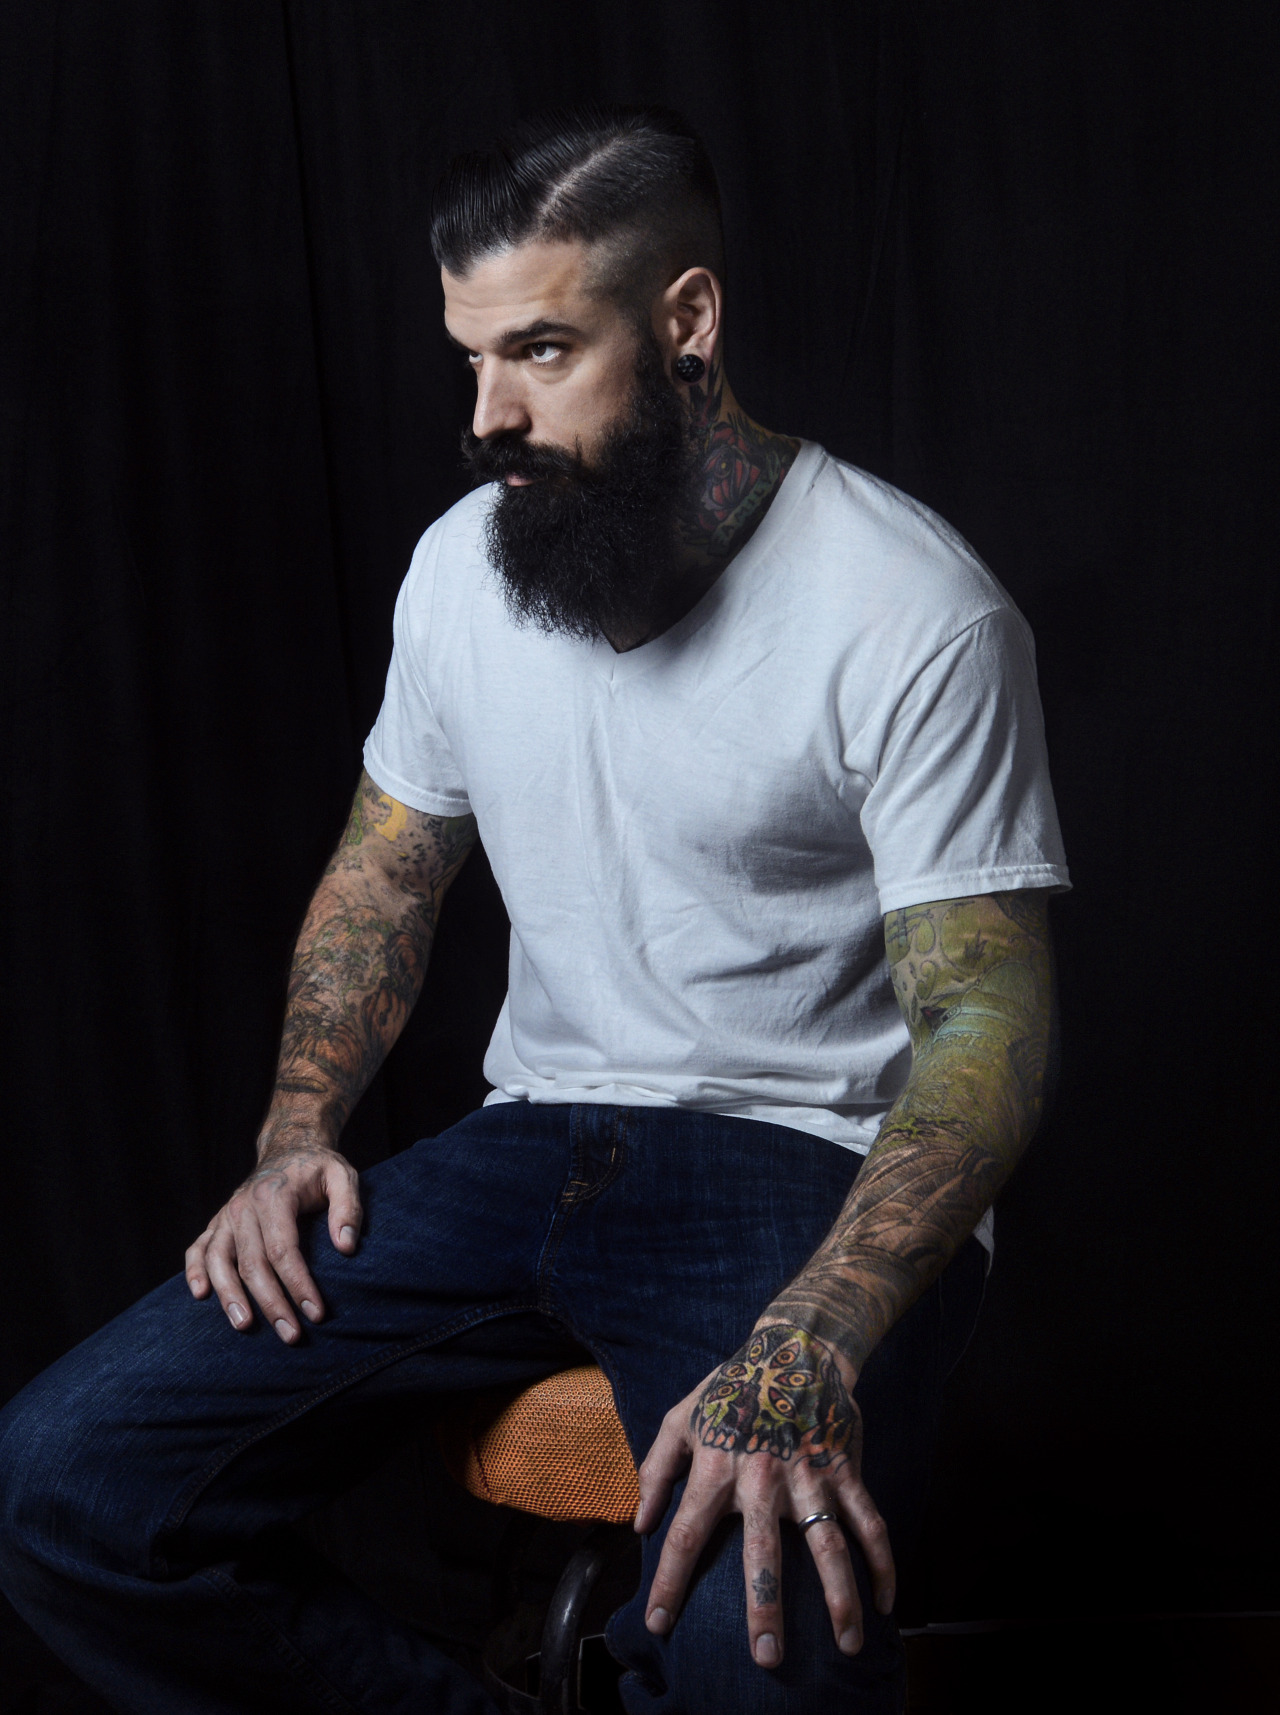 Männer mit tattoos kennenlernen